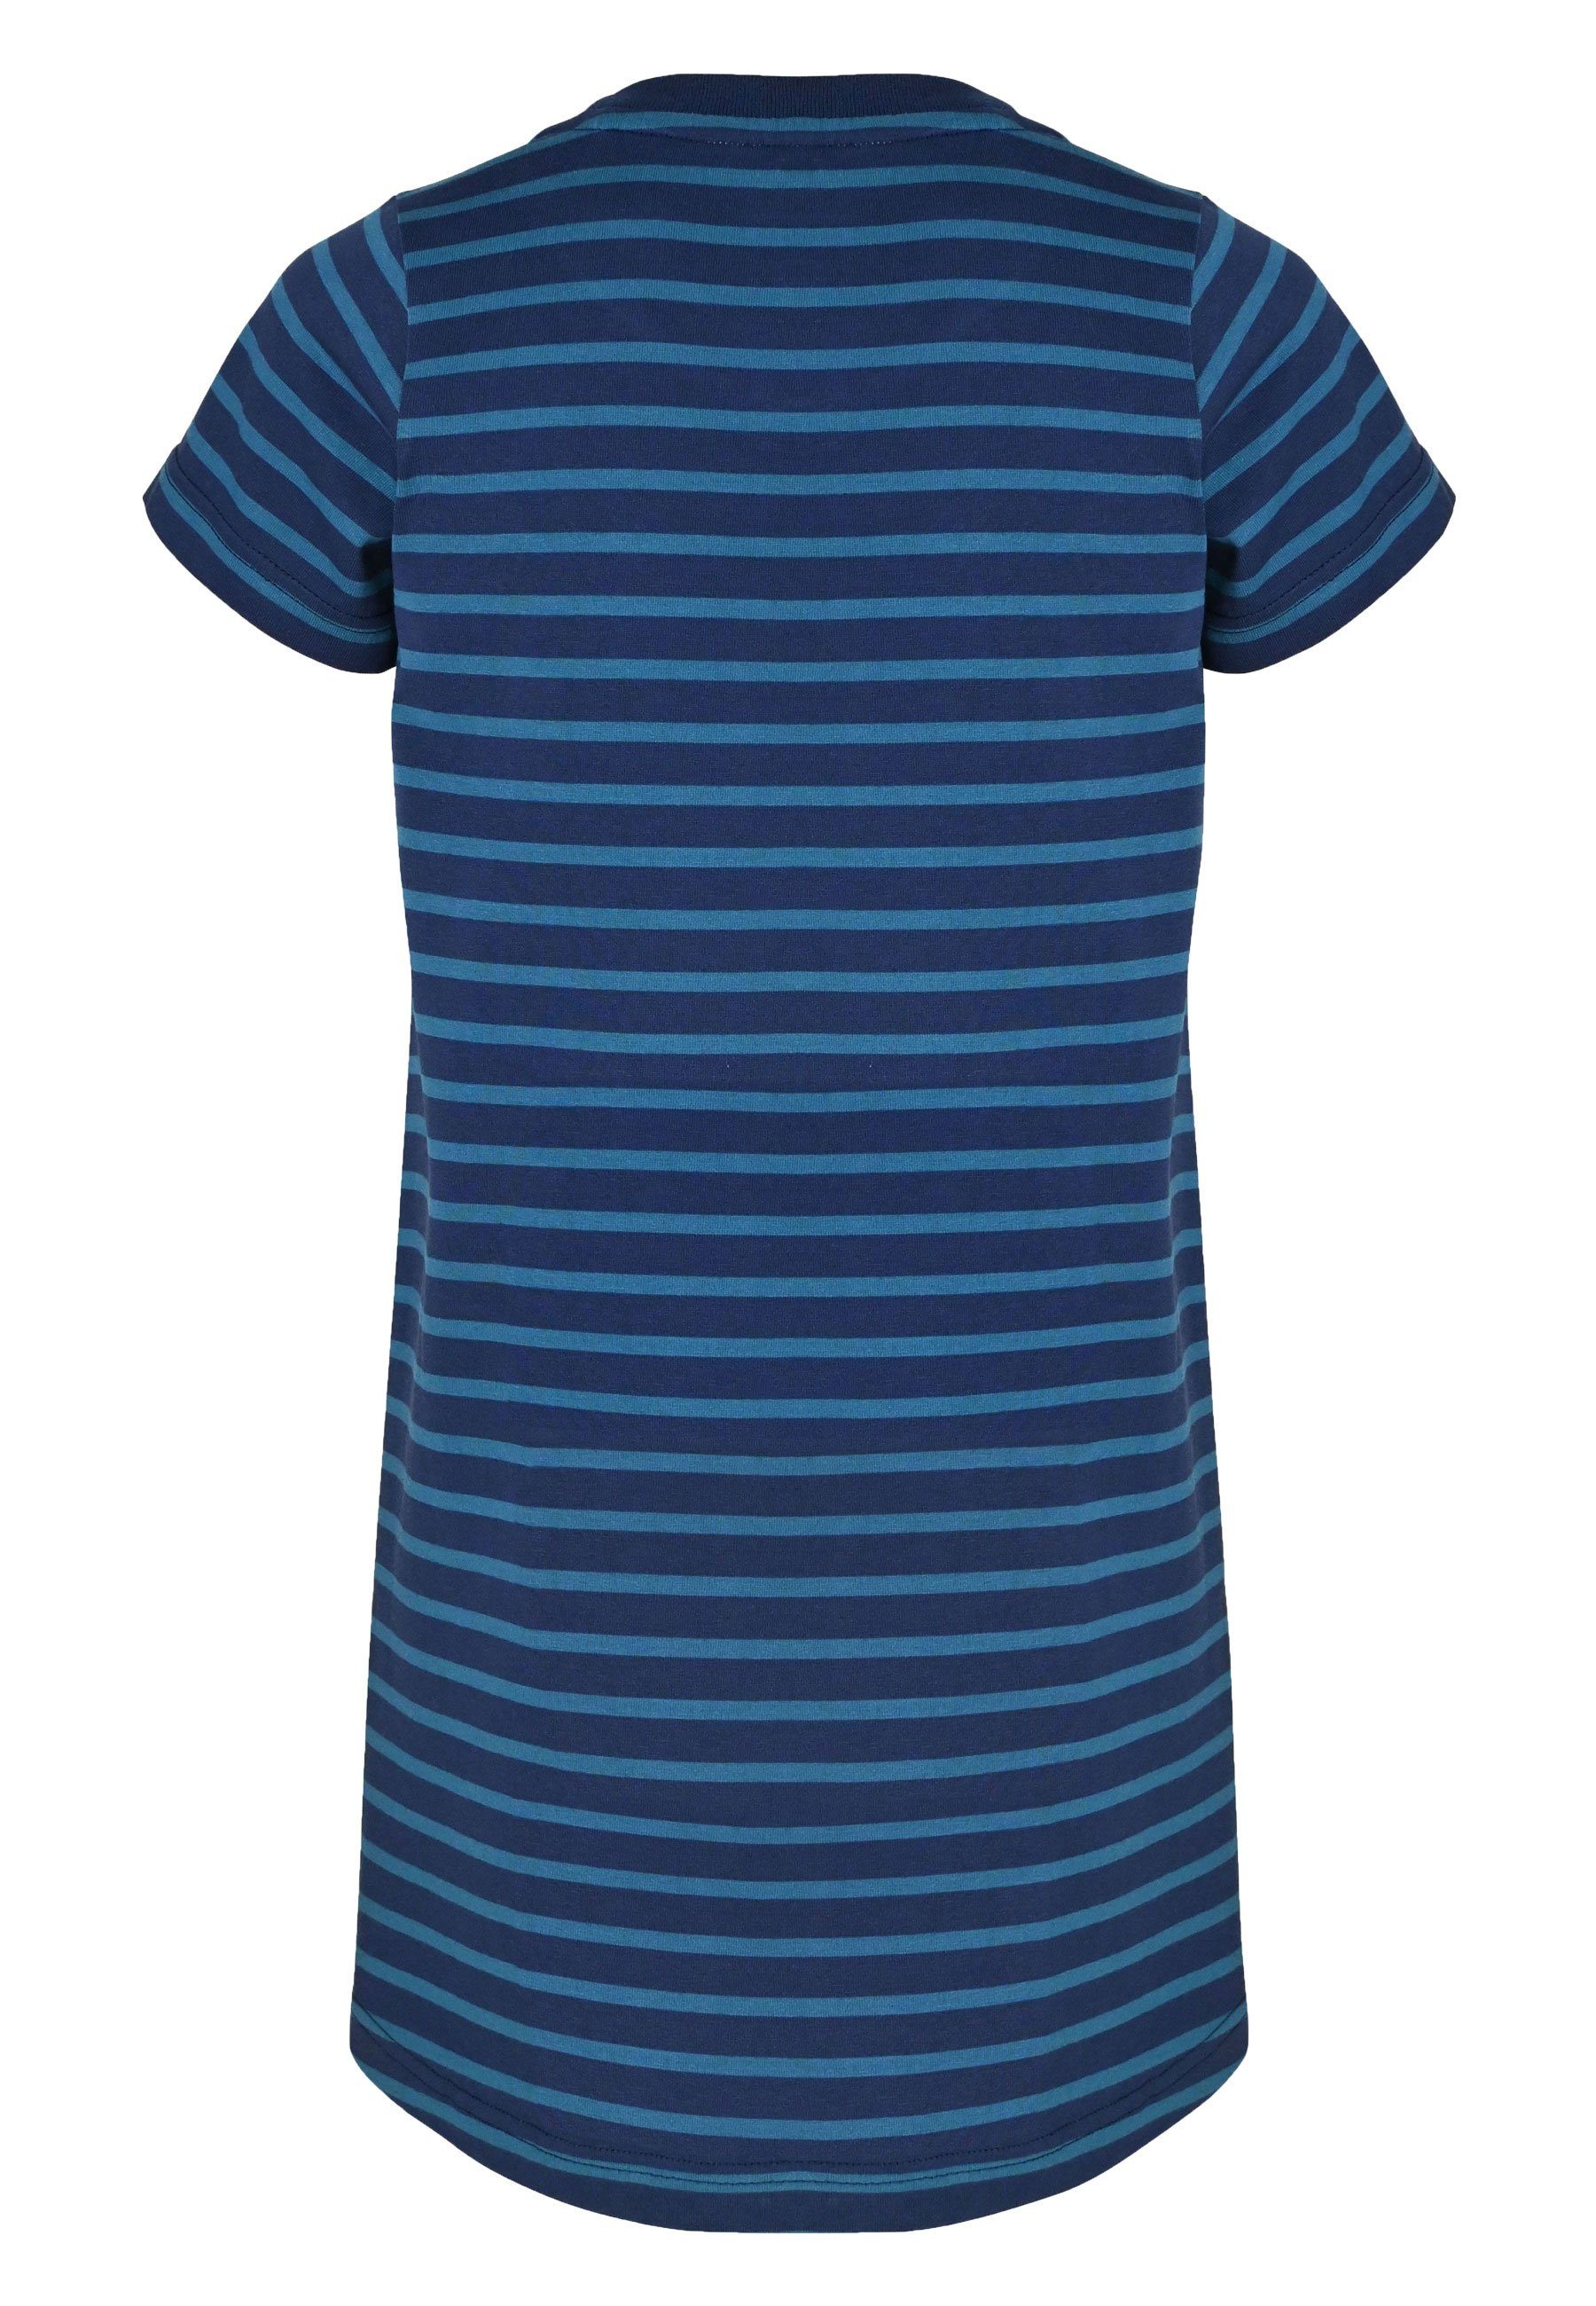 Elkline Sommerkleid - Shirt-Kleid darkblue bluecoral Streifen Basic Hanna